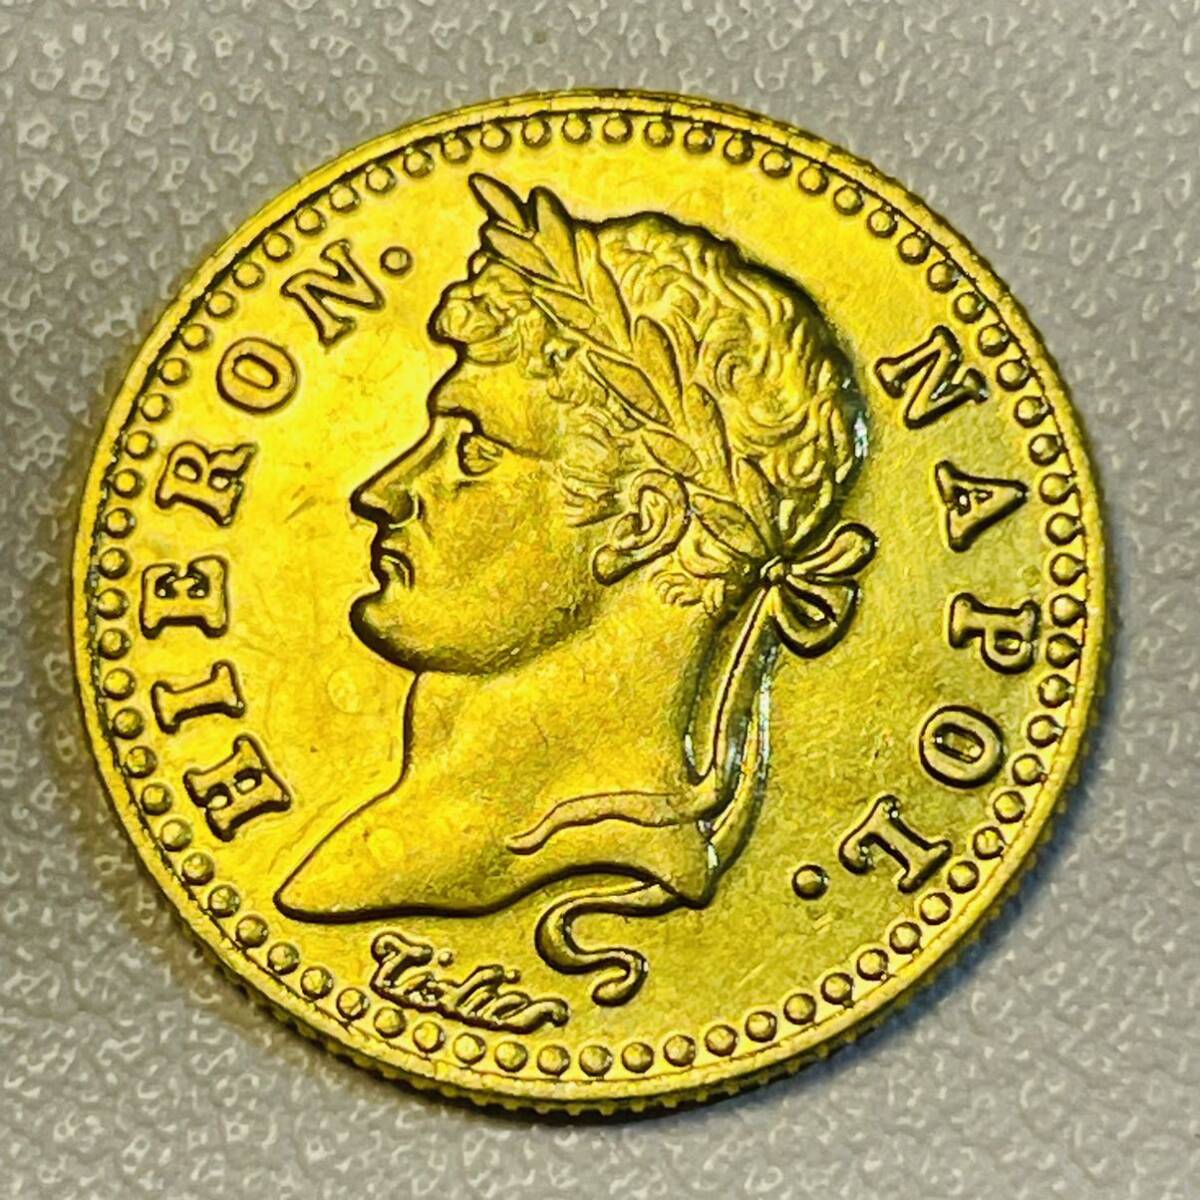 フランス 硬貨 古銭 ナポレオン1世 1813年 「ナポレオン皇帝」銘 10フラン コイン 重2.15g 金貨_画像1